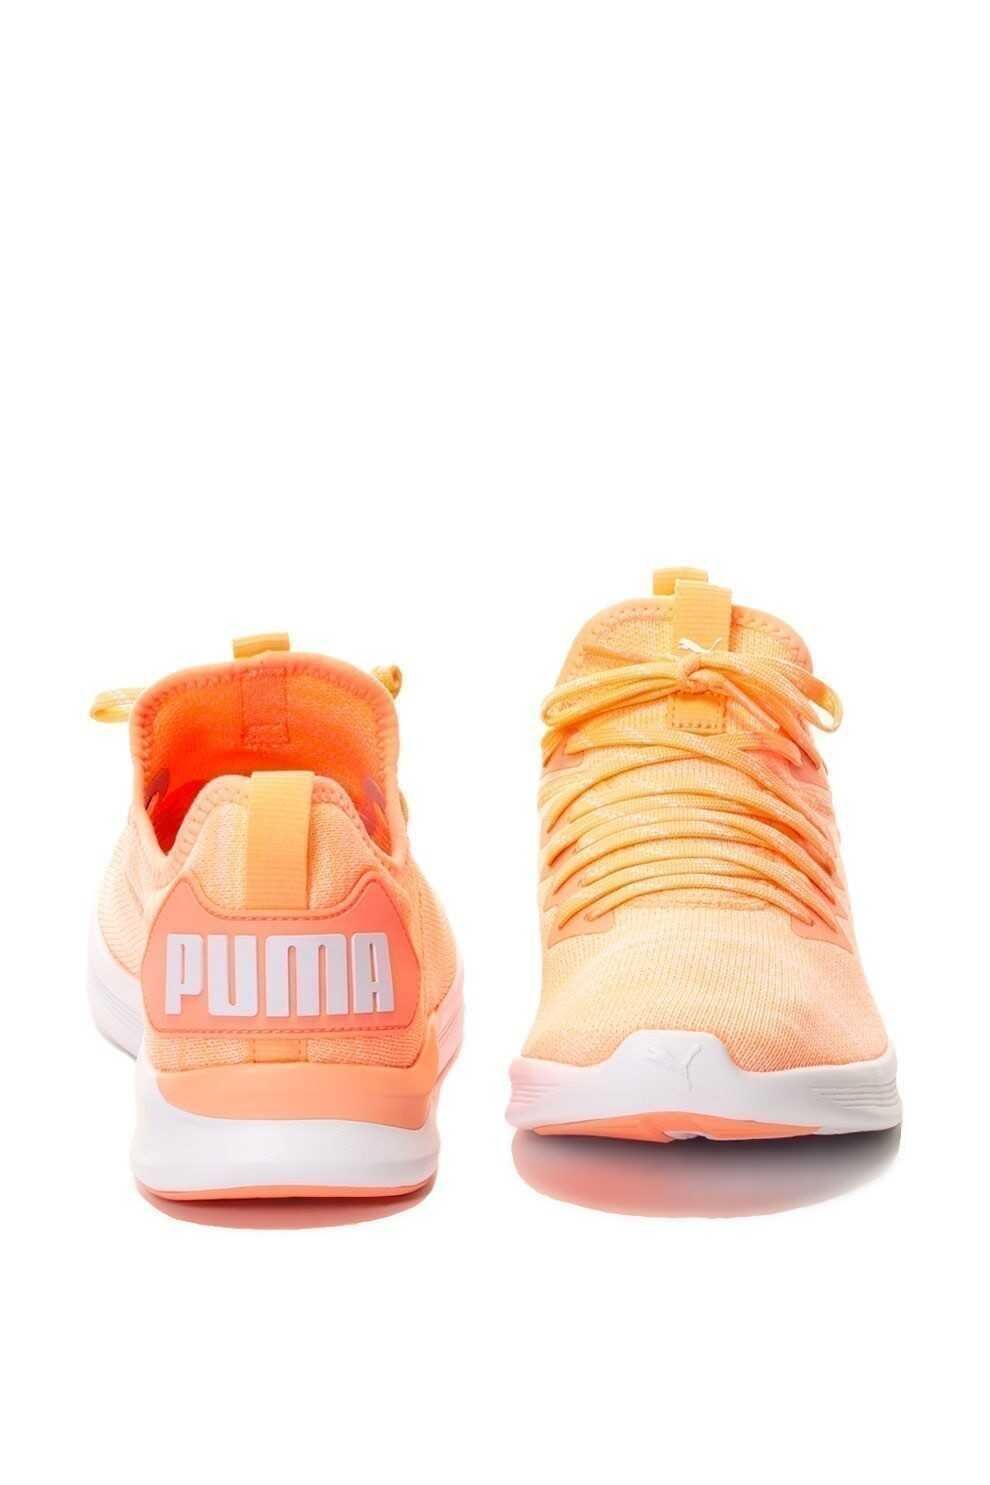 Дамски спортни обувки Puma Ignite, Розово-оранжеви, 255 мм, 40